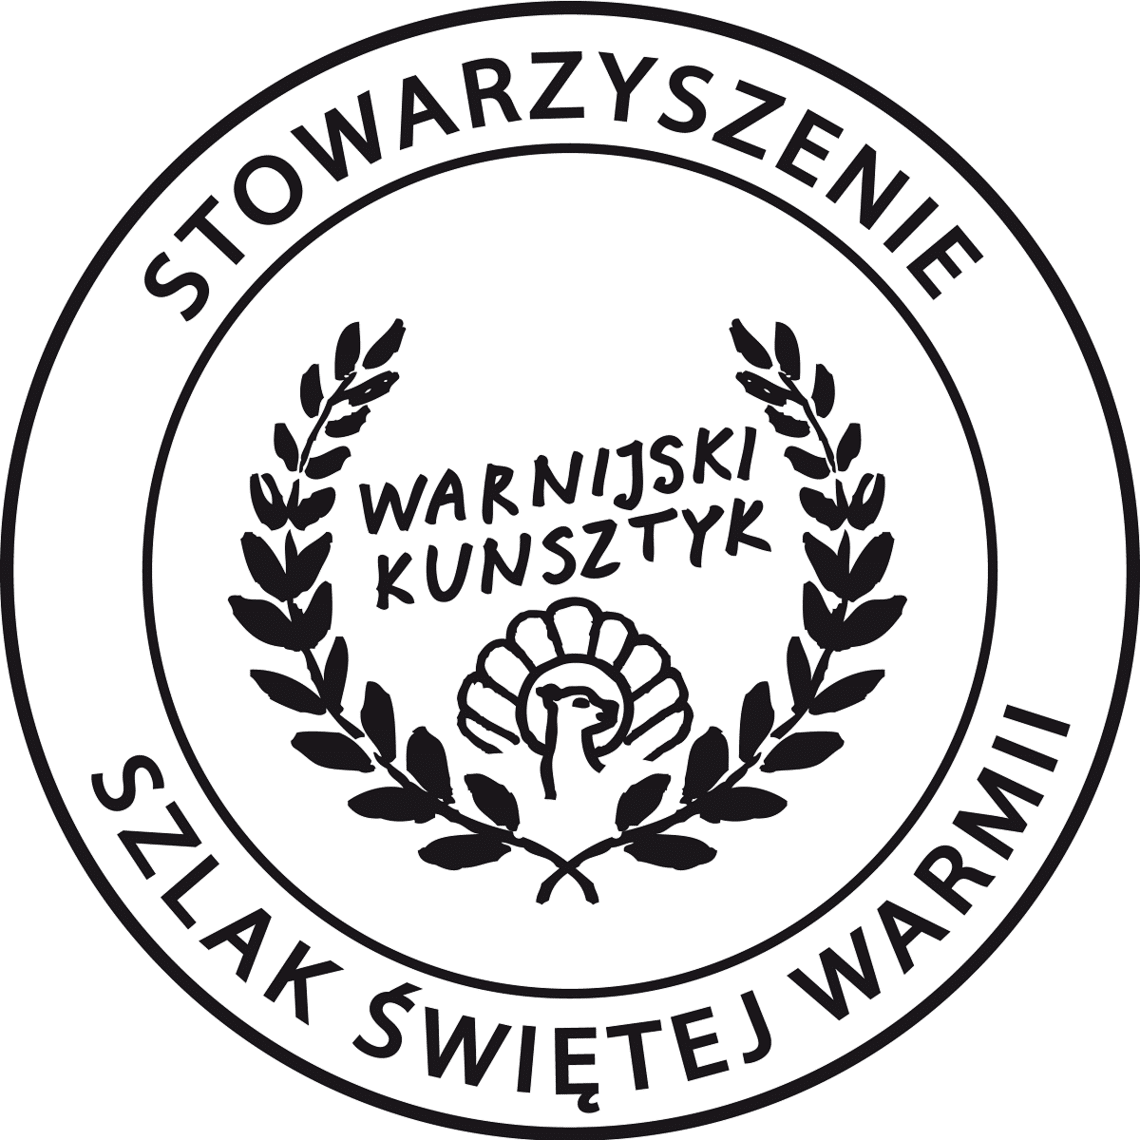 Ruszył konkurs "Kunsztyk Warnijski" na wyjątkowe produkty i usługi lokalne kultura Olsztyn, Wiadomości, zShowcase